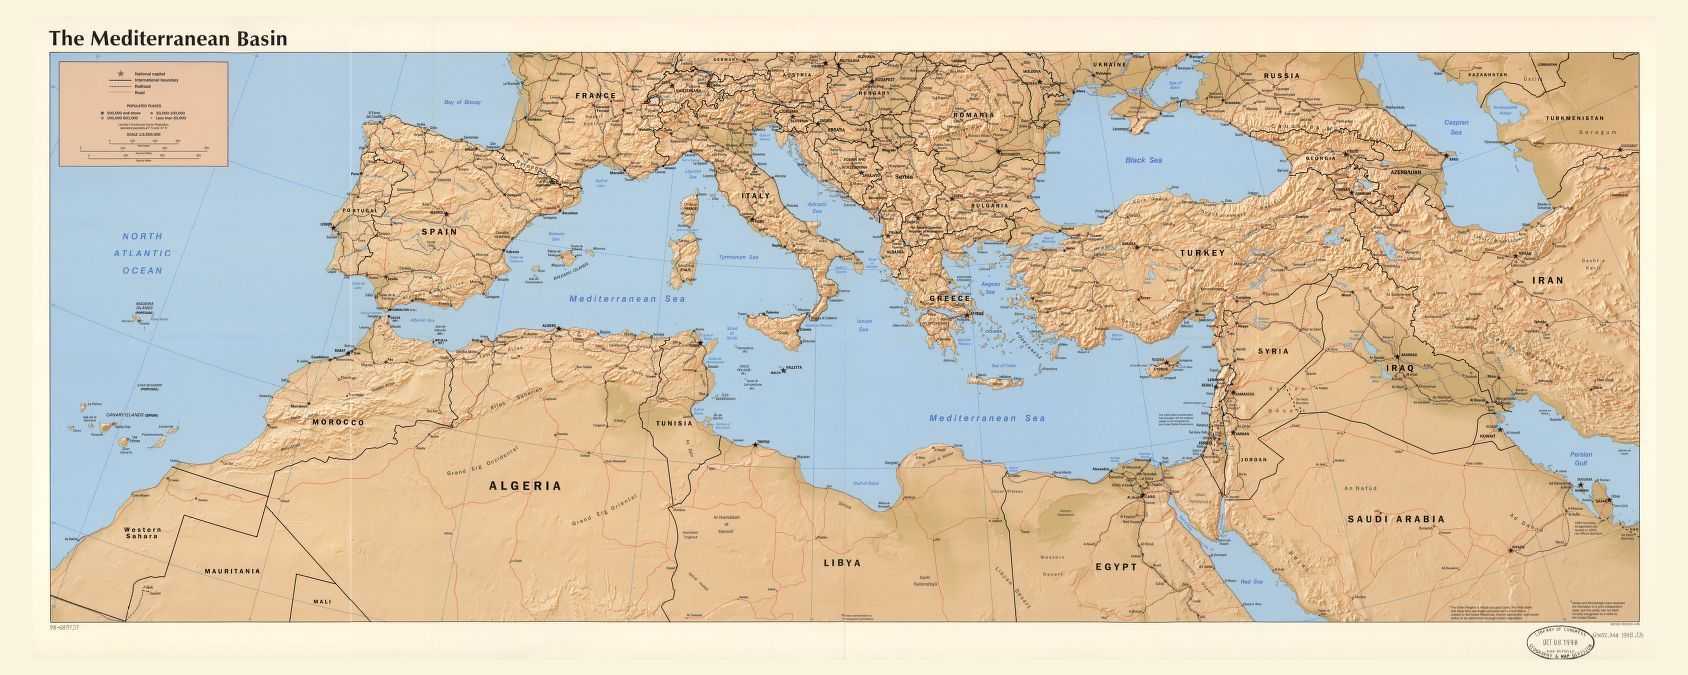 Моря зарубежной европы  особенности акваторий, описание береговой линии